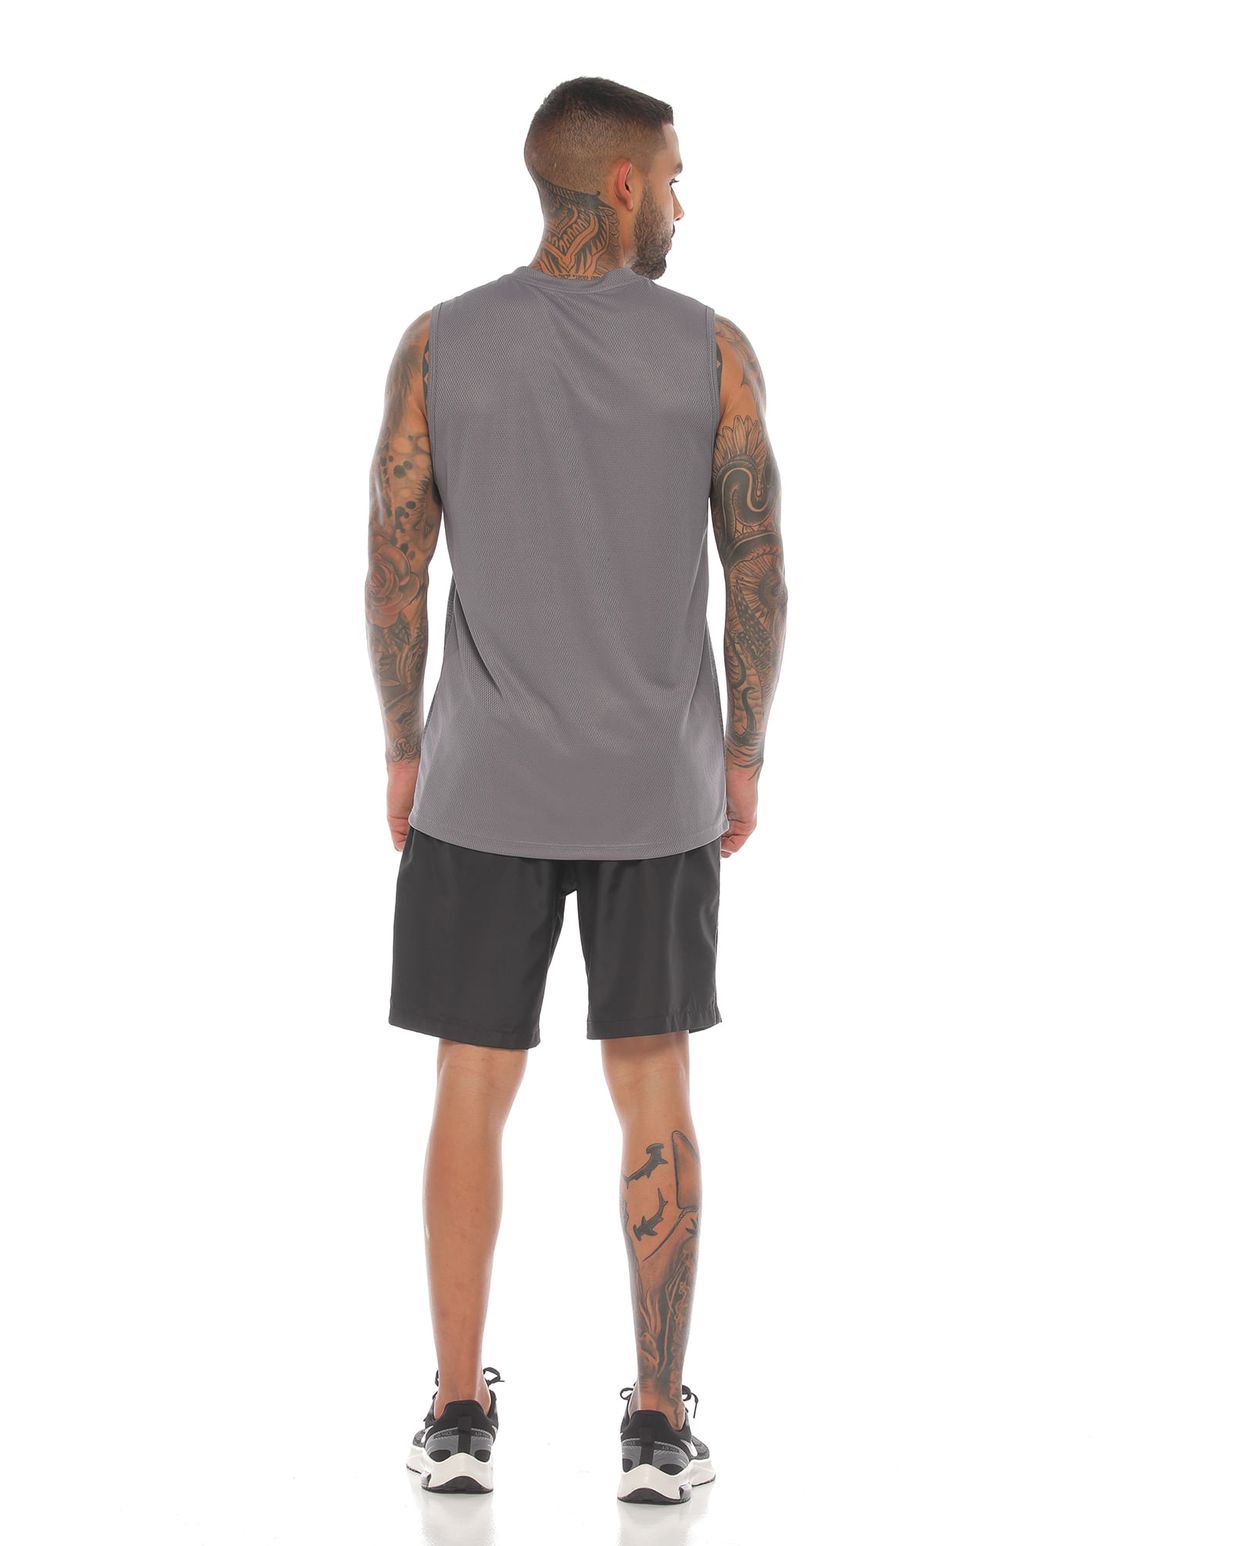 modelo con esqueleto deportivo hombre color gris claro y pantaloneta color negro cuerpo completo parte trasera